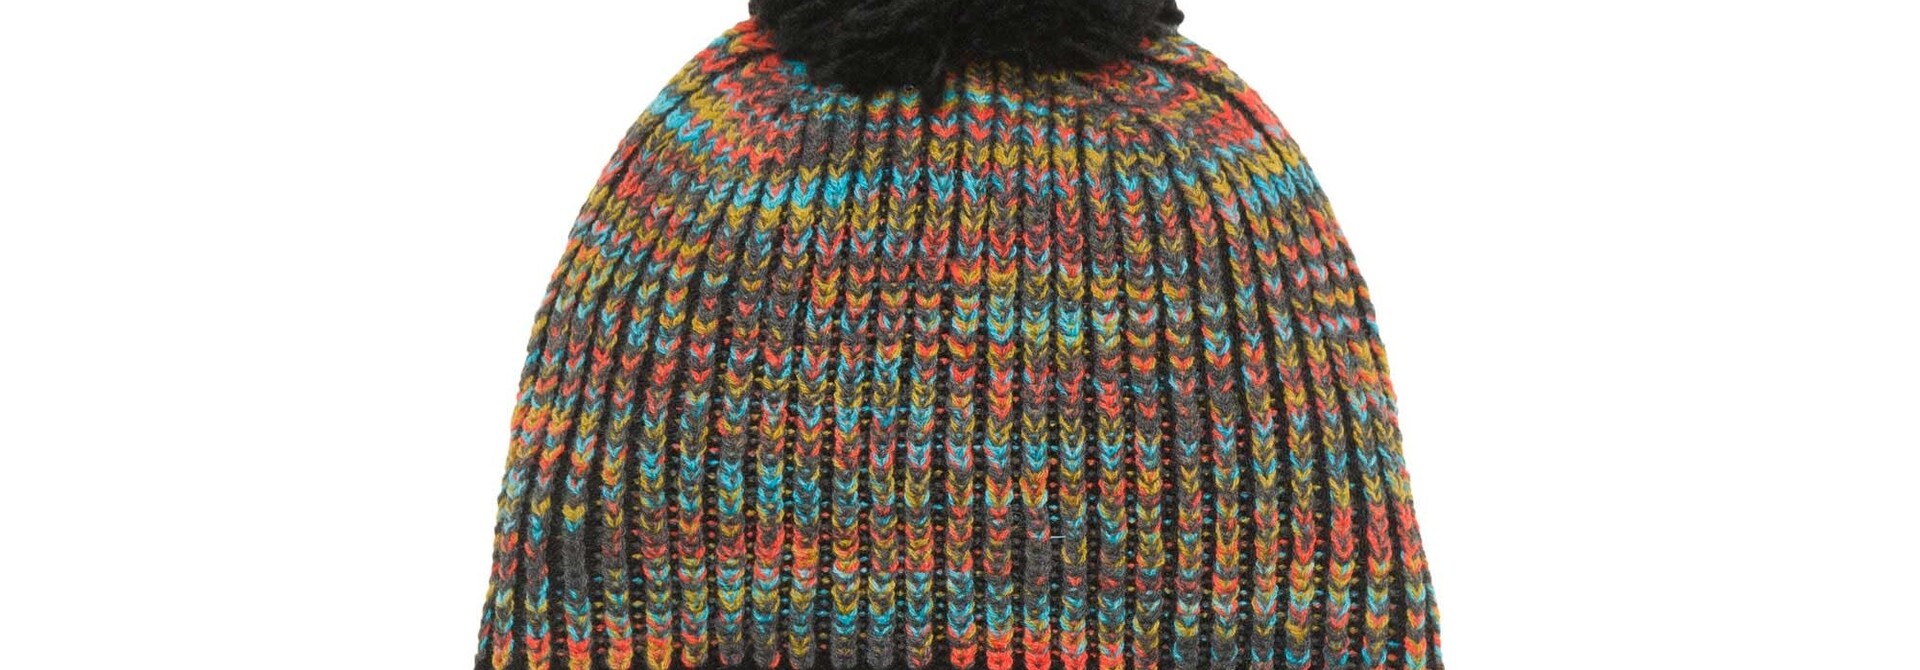 Tuque en tricot - DINOSAURUS